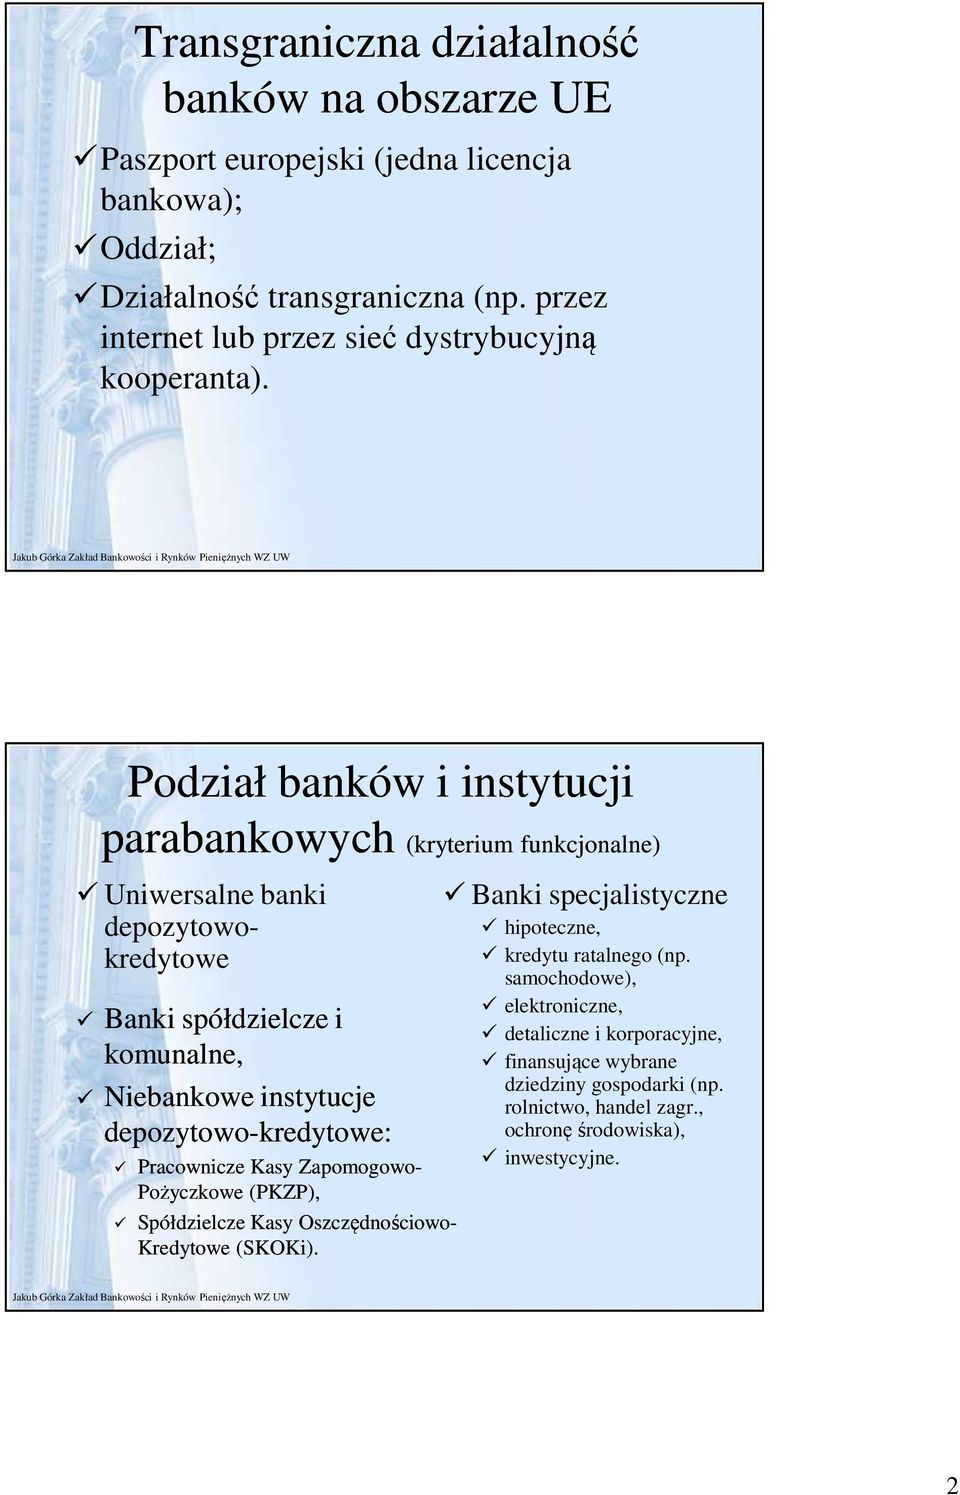 Podział banków i instytucji parabankowych parabankowych (kryterium funkcjonalne) Uniwersalne banki depozytowokredytowe Banki spółdzielcze i komunalne, Niebankowe instytucje